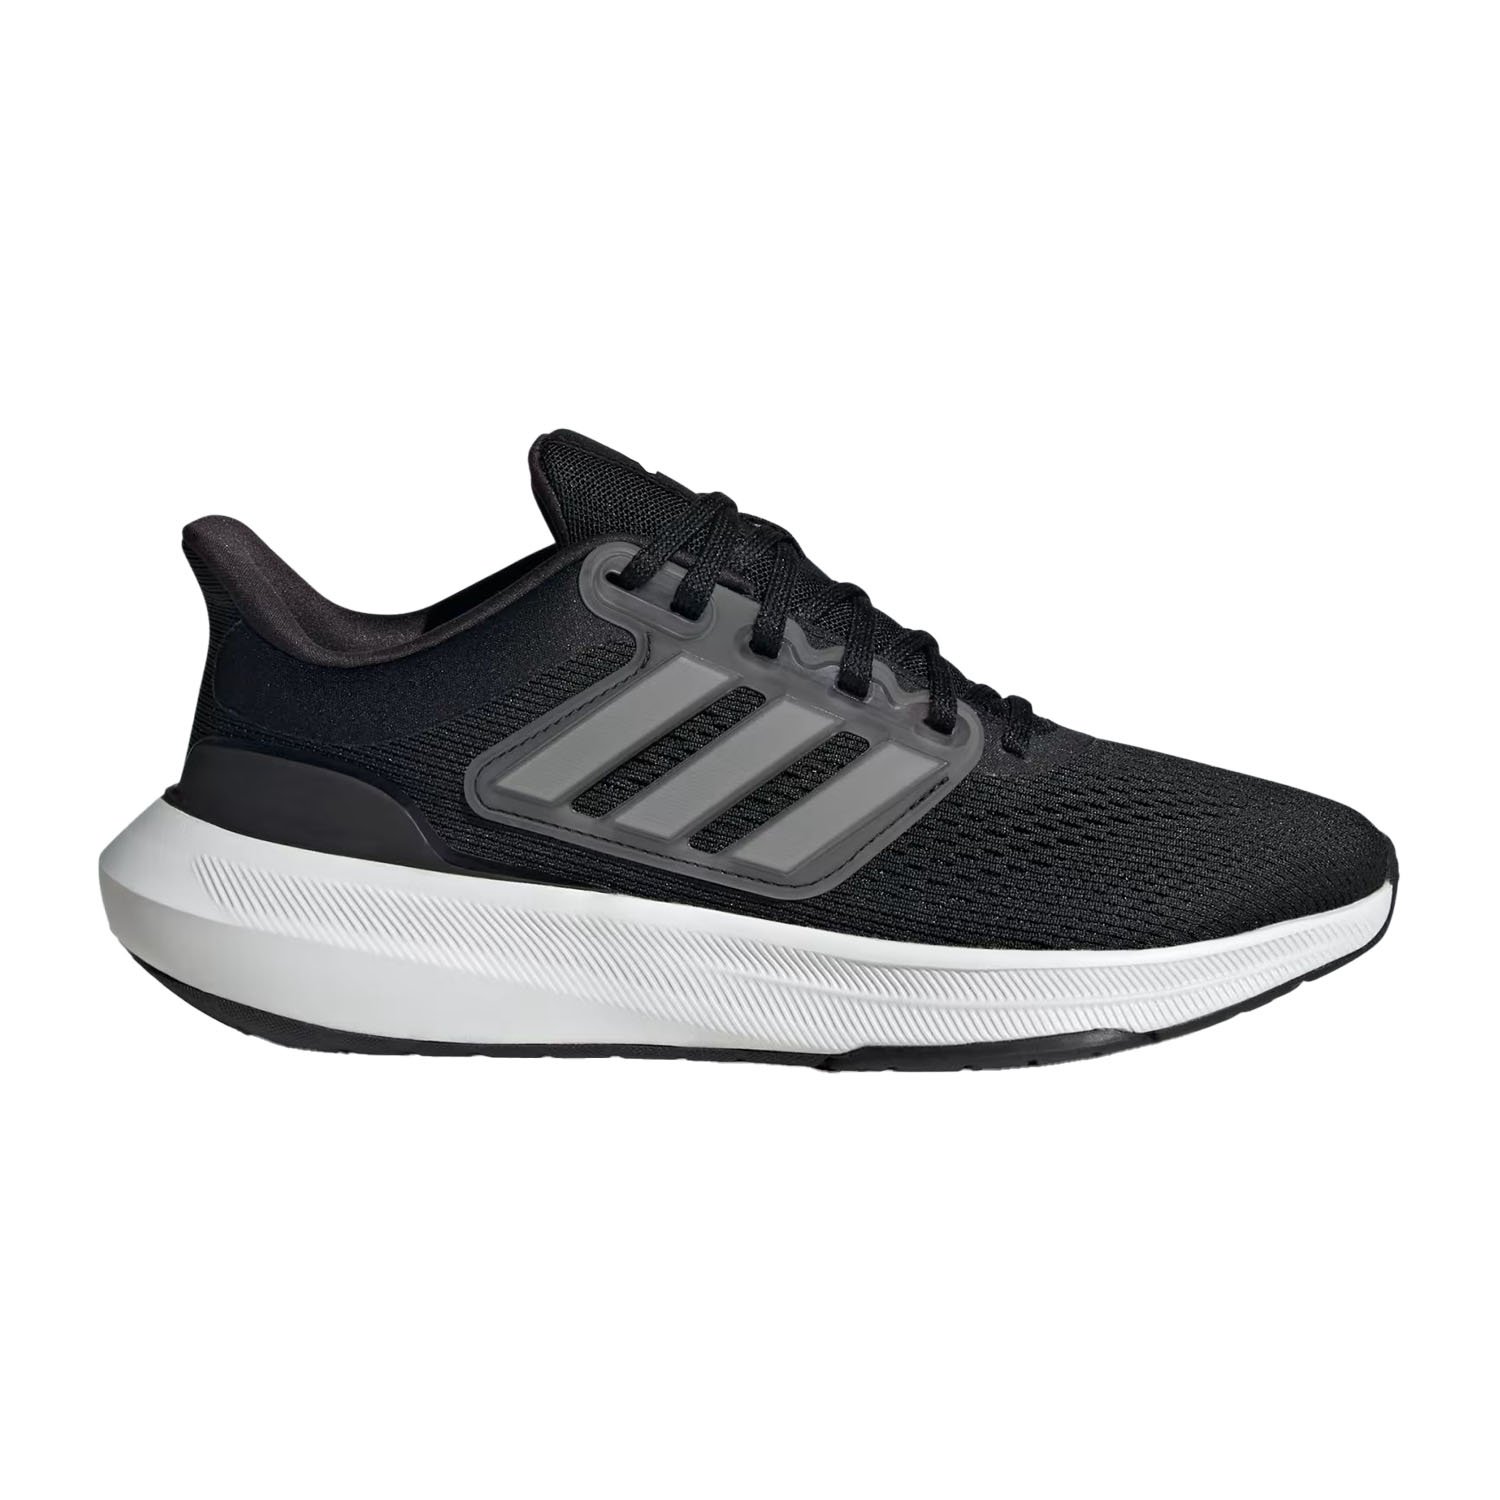 Adidas Ultrabounce Kadın Yol Koşu Ayakkabısı - Siyah - 1